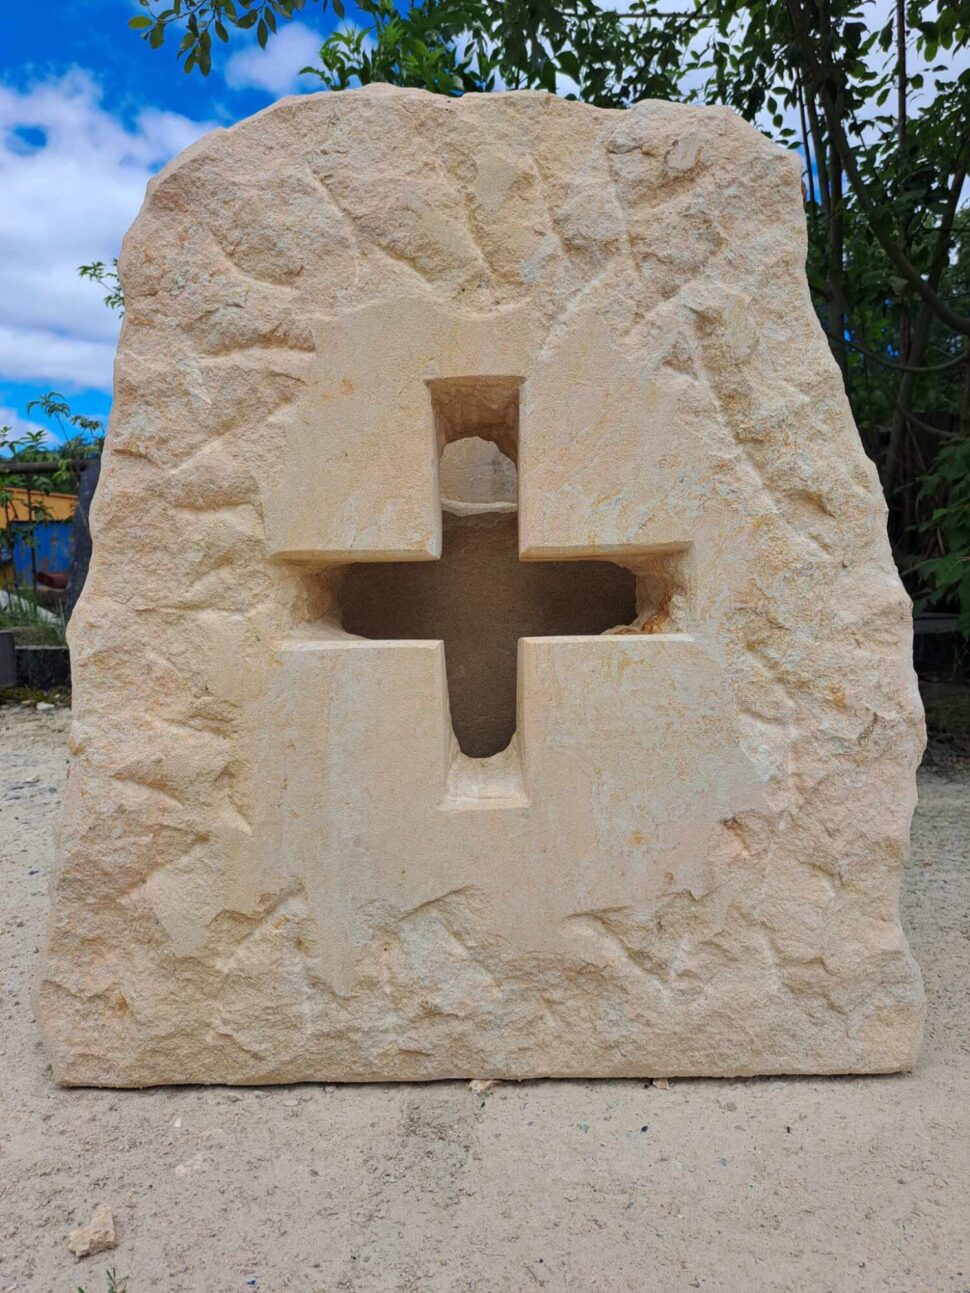 Kříž, který je skrz na skrz vytvořený do solitéru. Materiál, ze kterého je kříž vytvořen je přírodní hořický pískovec.